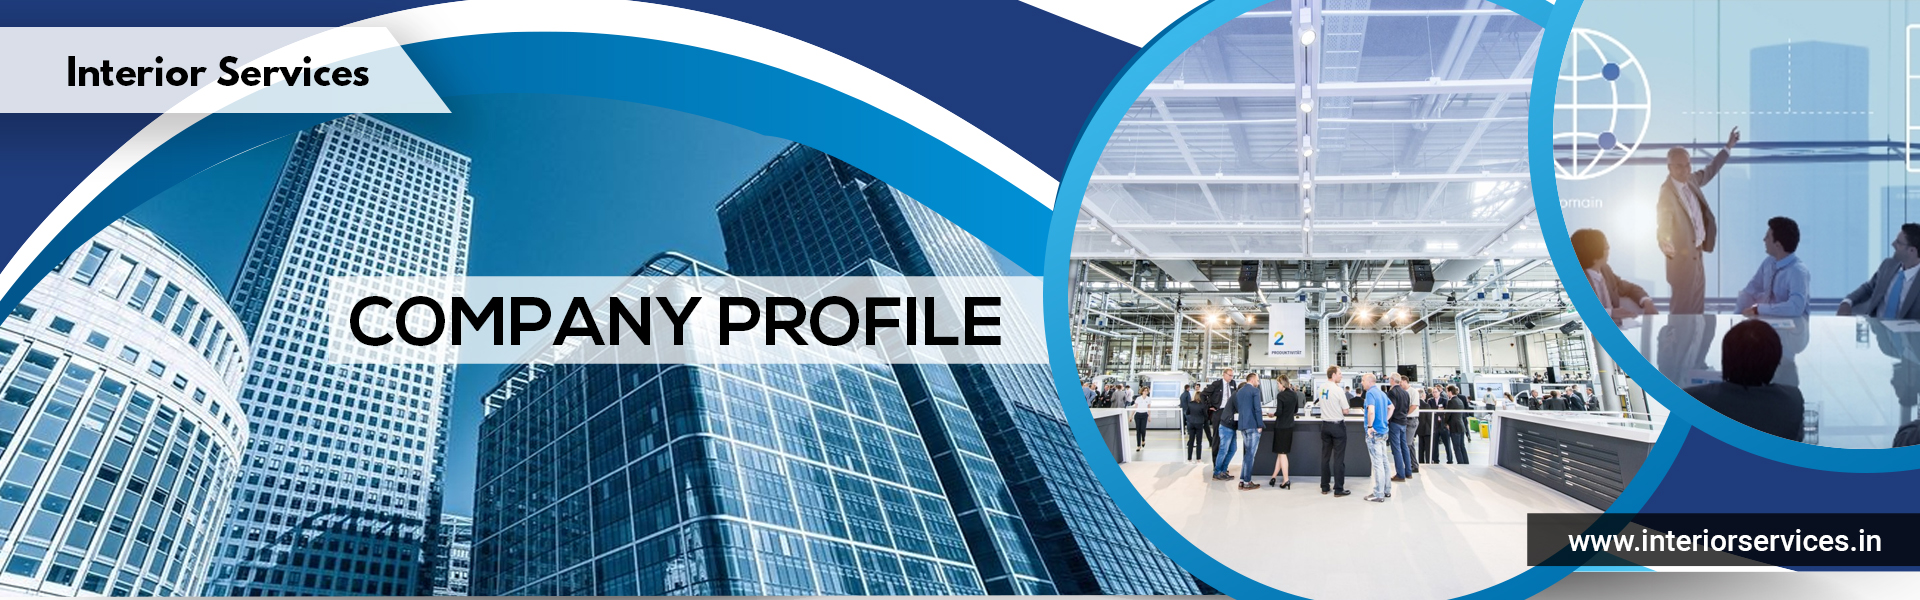 Interior Services Company Profile Image